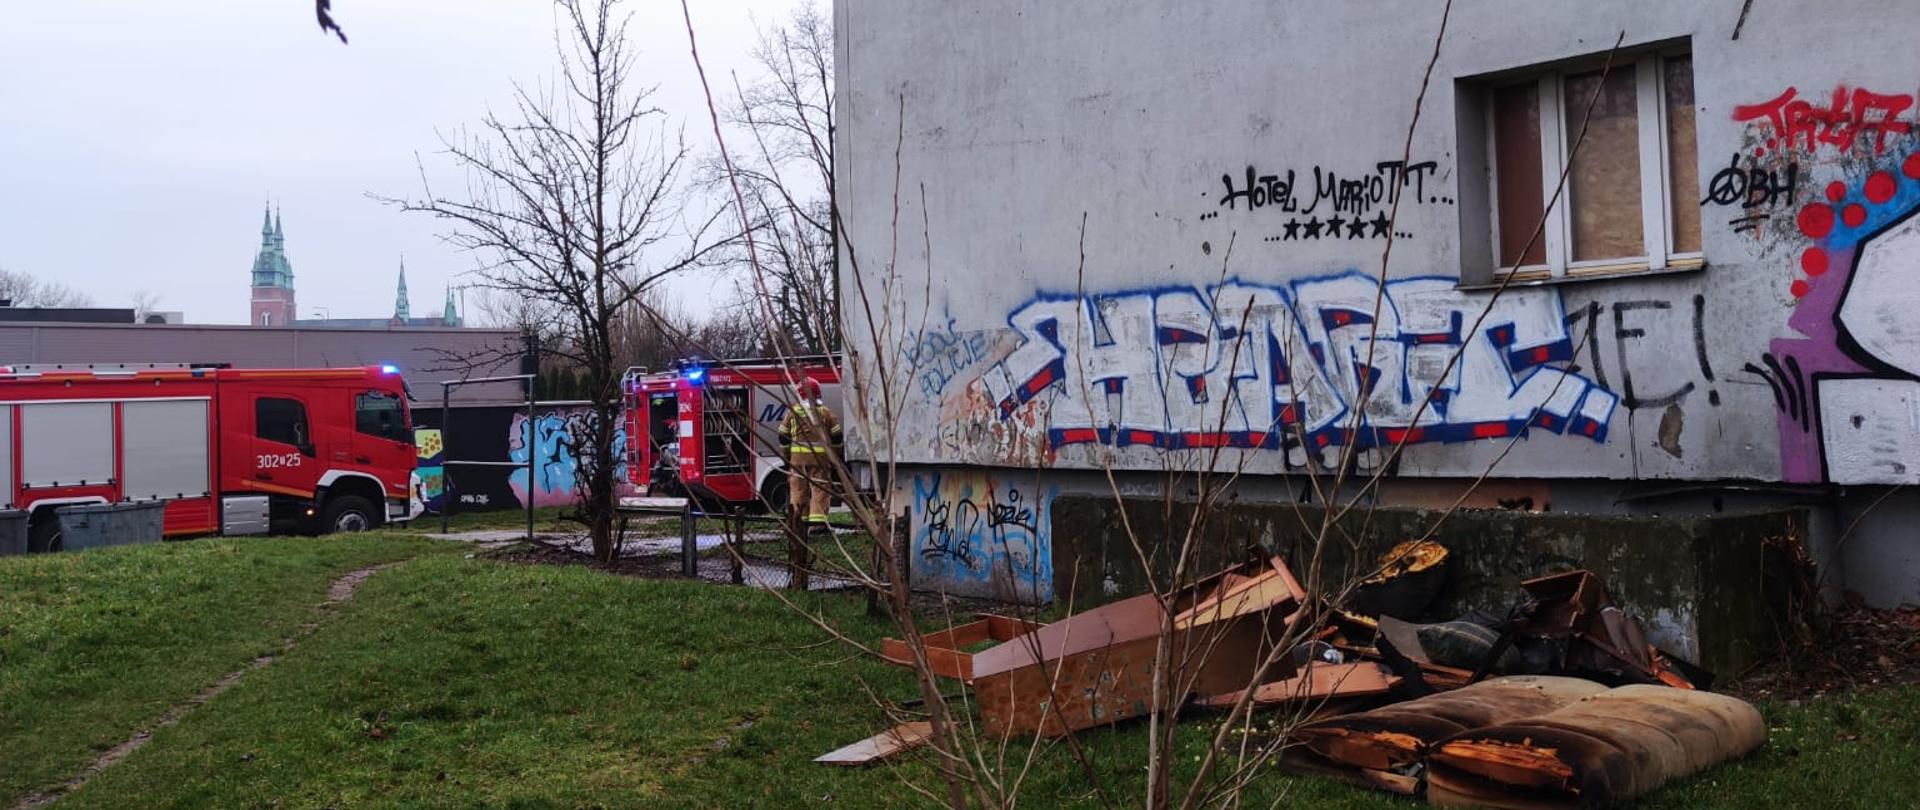 Zdjęcie przedstawia budynek socjalny oraz leżące przy ścianie meble zniszczone przez pożar. W głębi widać samochody pożarnicze